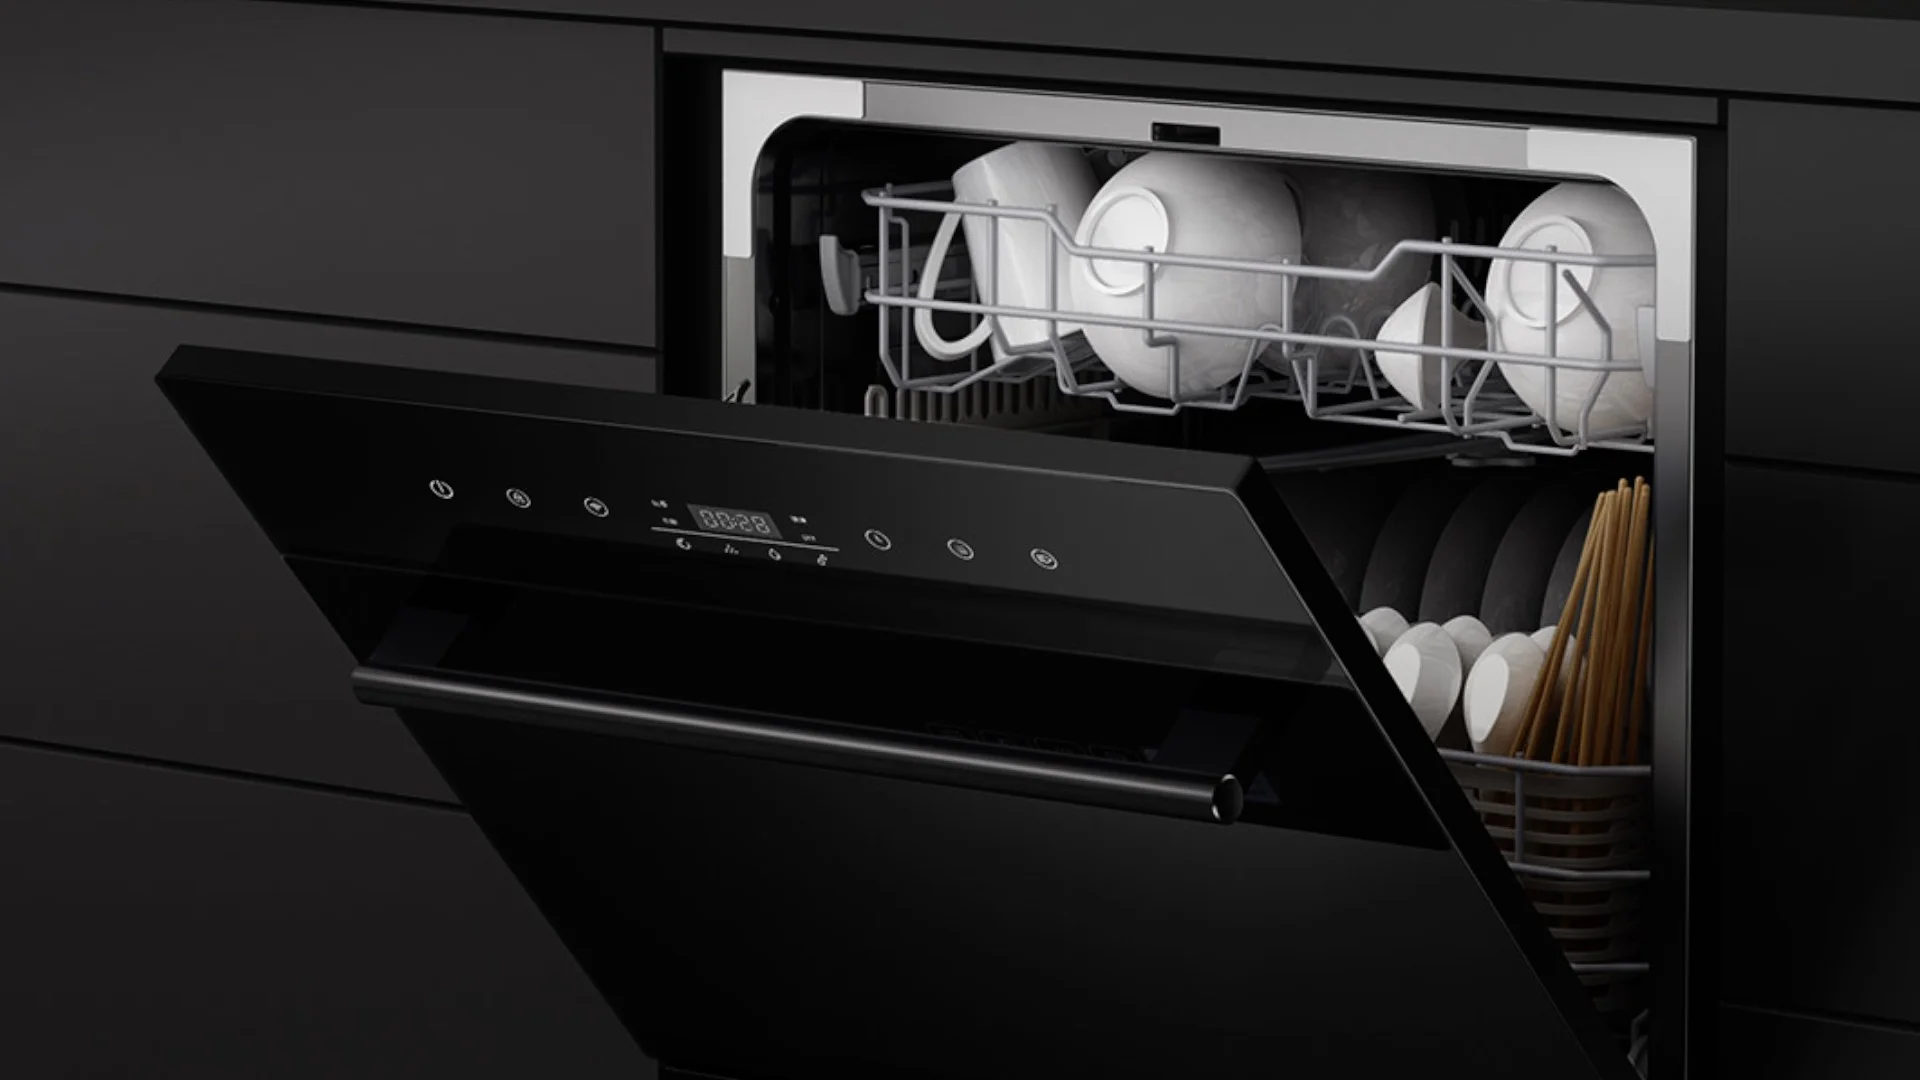 Xiaomi launches smart dishwasher